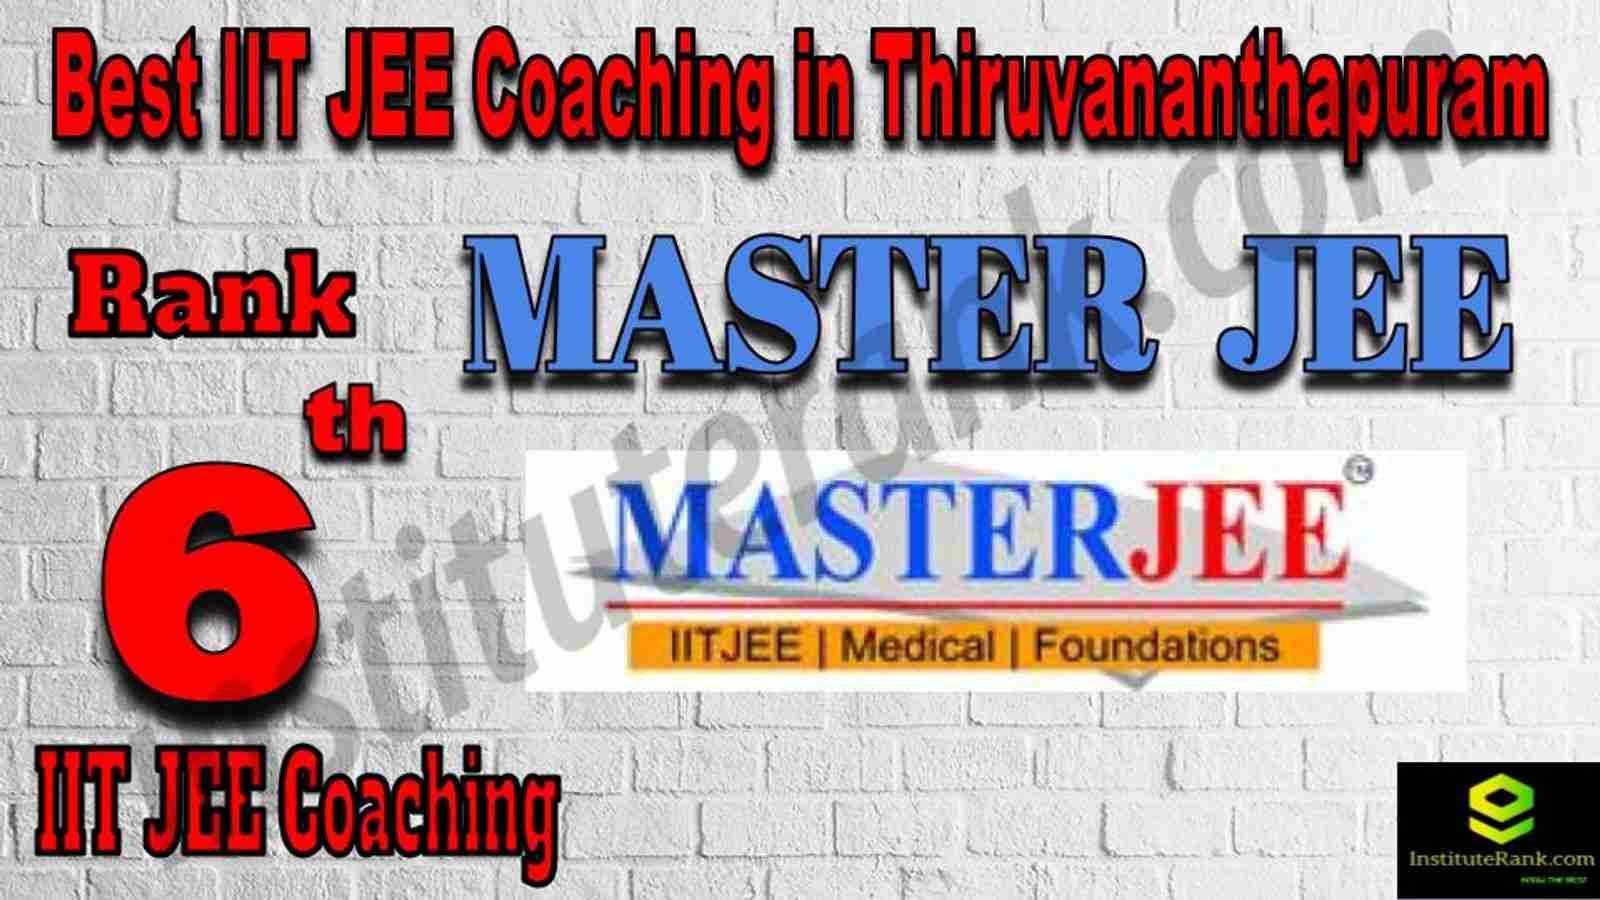 6th Best IIT JEE Coaching in Thiruvananthapuram